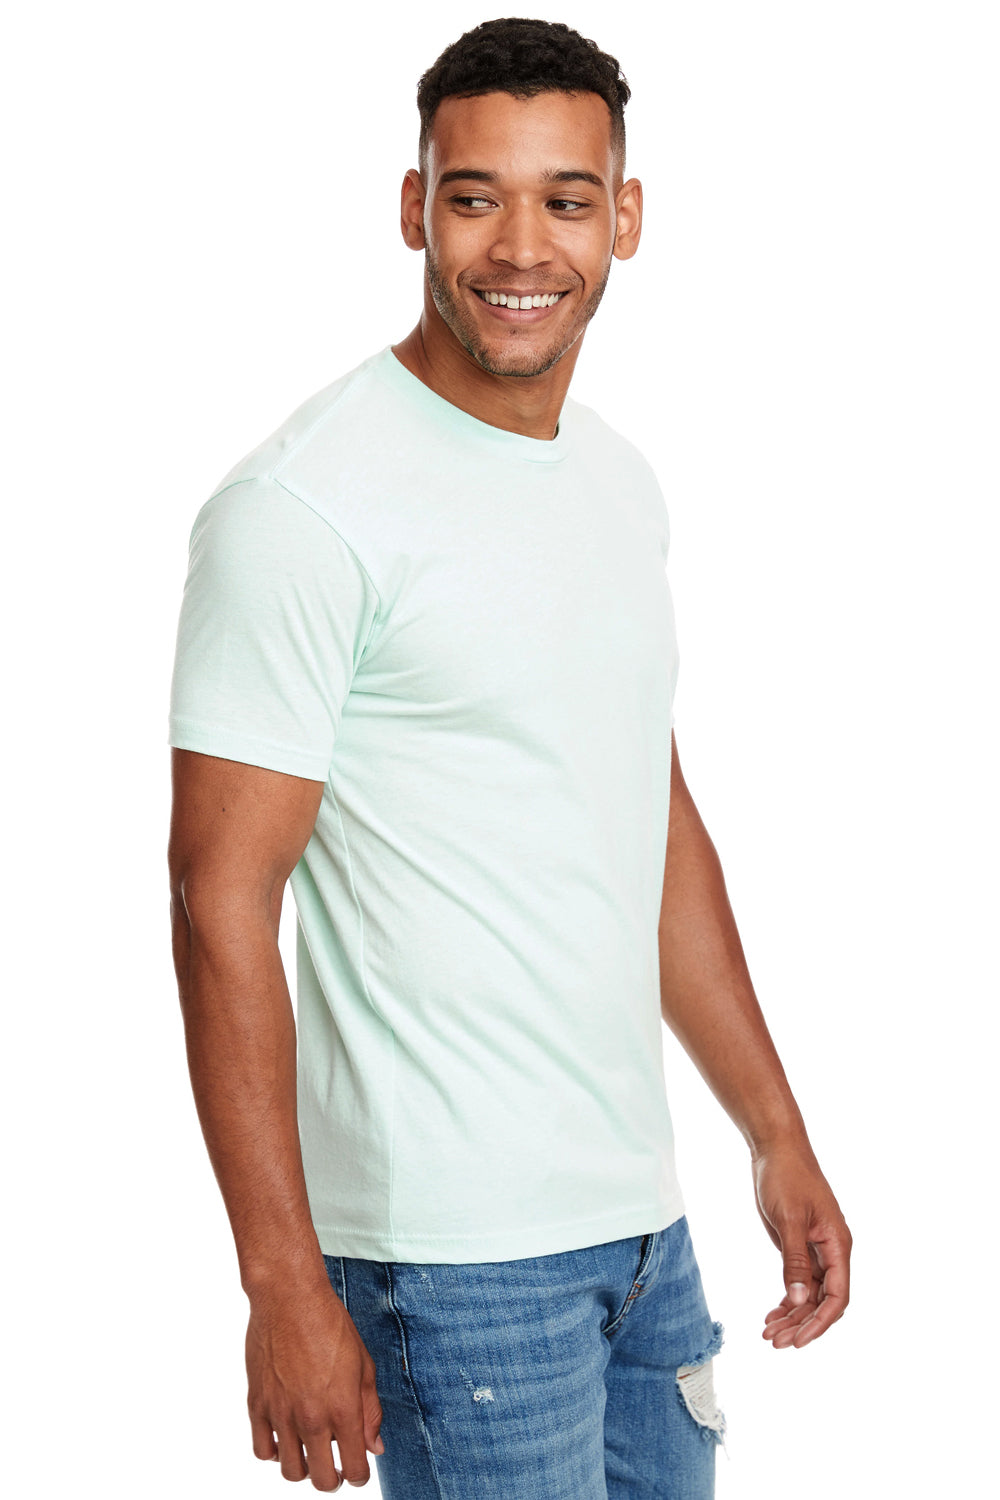 Next Level N6210 Mens CVC Jersey Short Sleeve Crewneck T-Shirt Mint Green Side